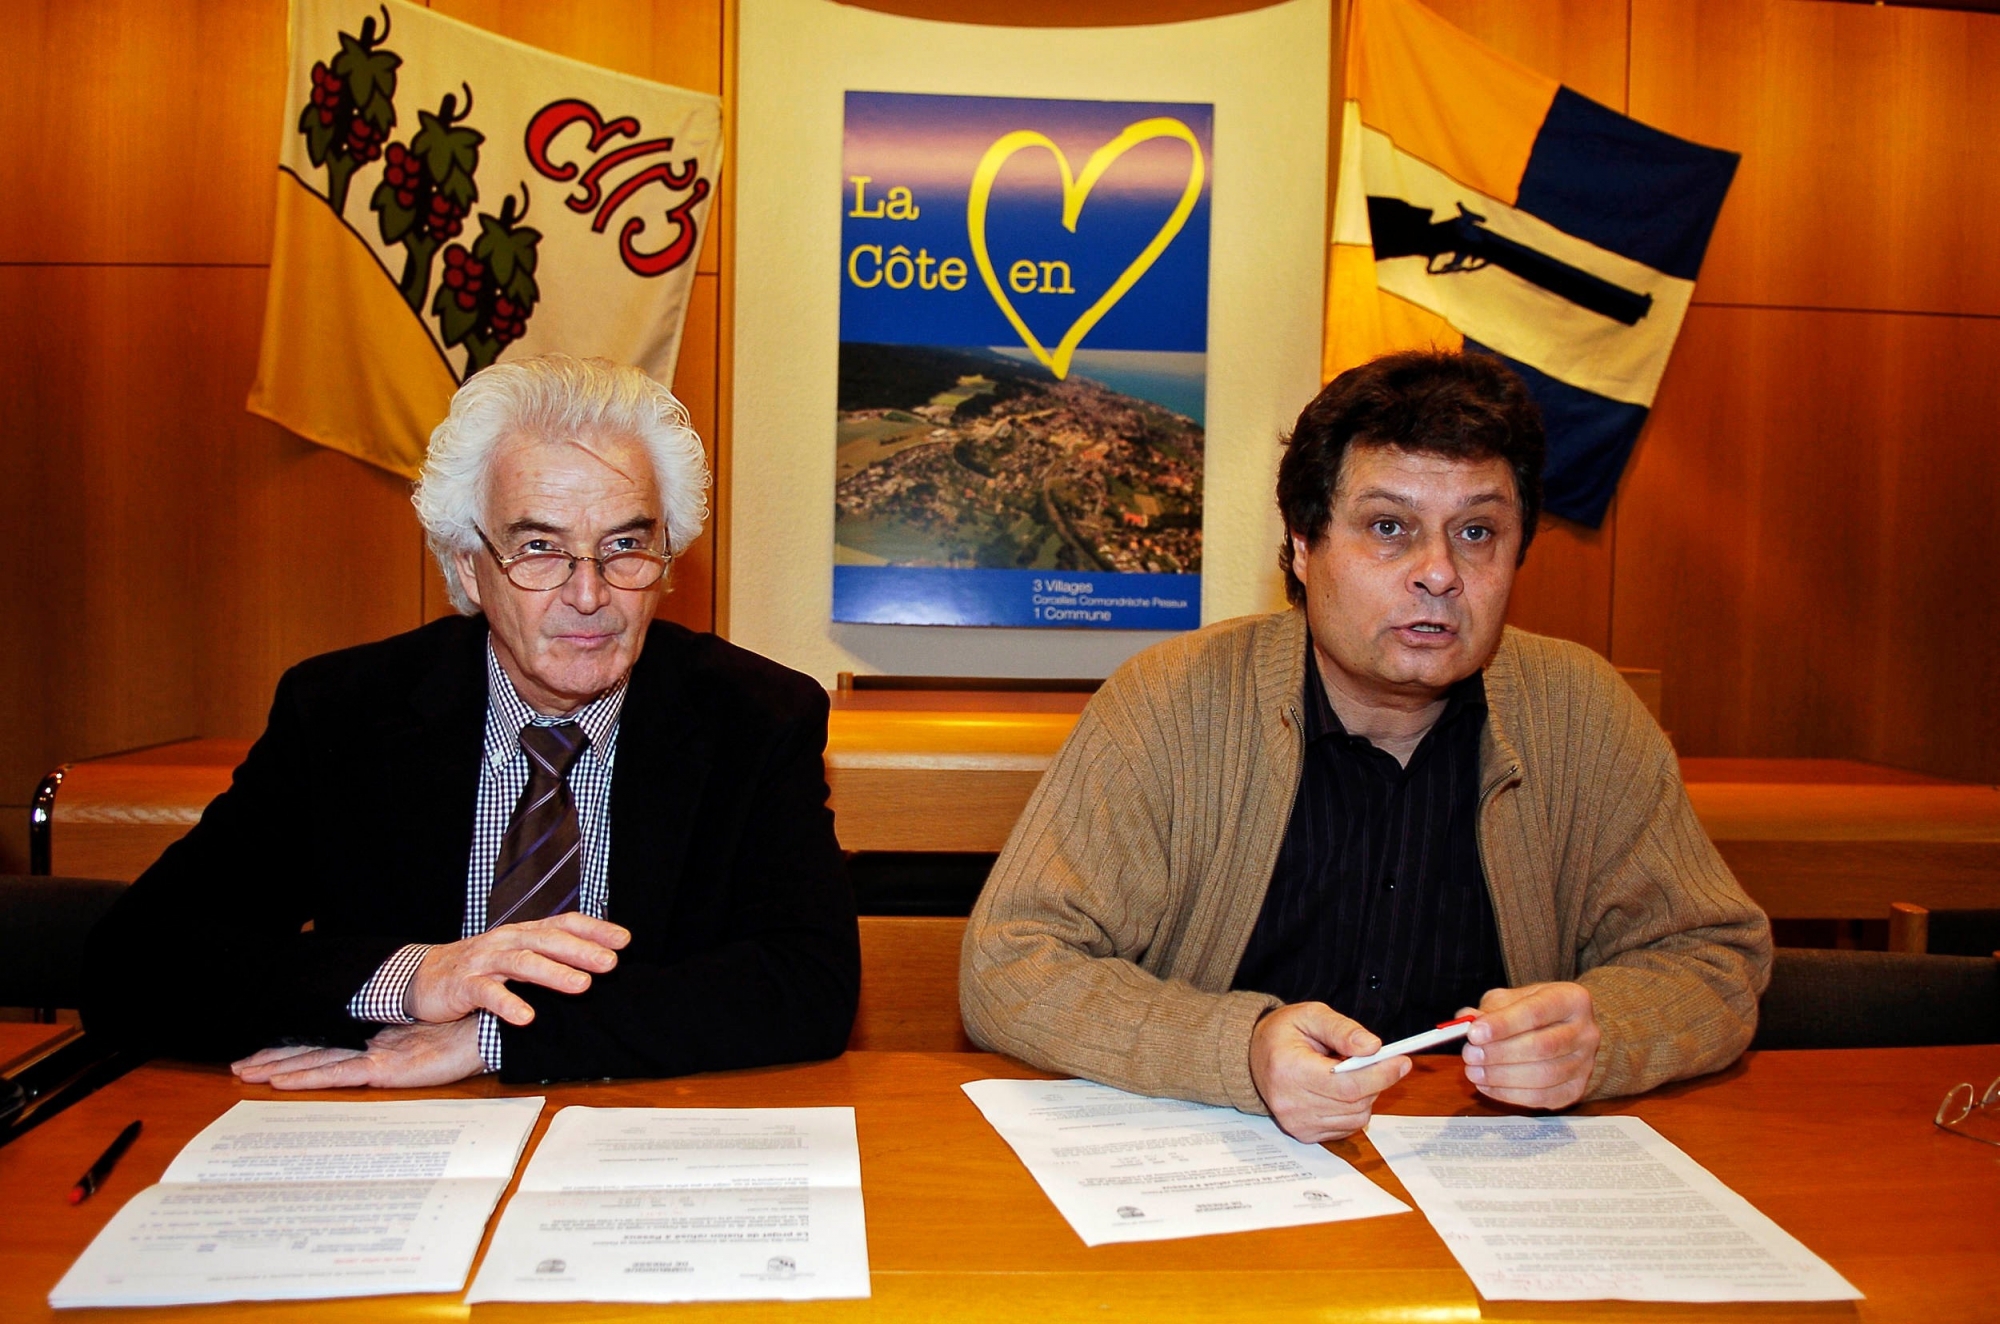 9 décembre 2007: les présidents des communes de Corcelles et de Peseux, Claude Gygax et Patrice Neuenschwander prennent acte de l'échec de la fusion.